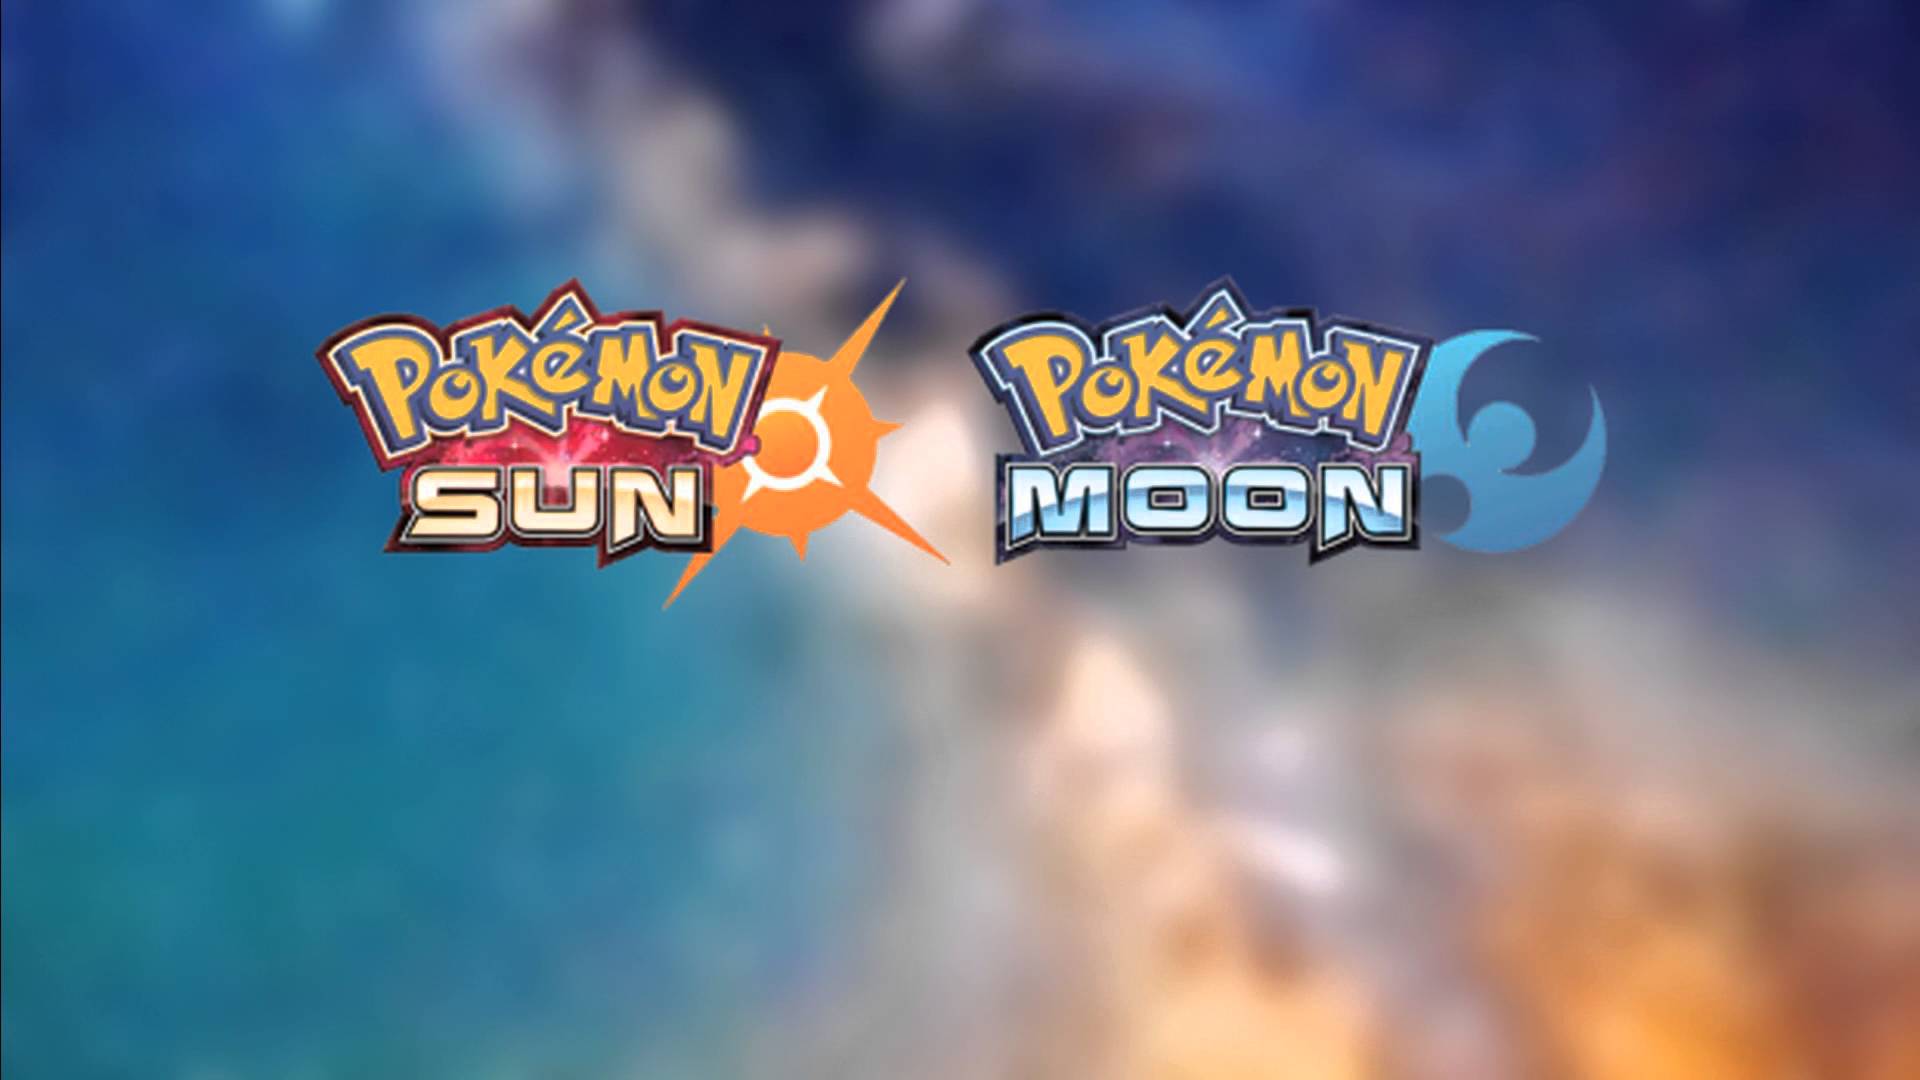 Nintendo Direct Ger Cht Werden Pok Mon Sun Und Moon